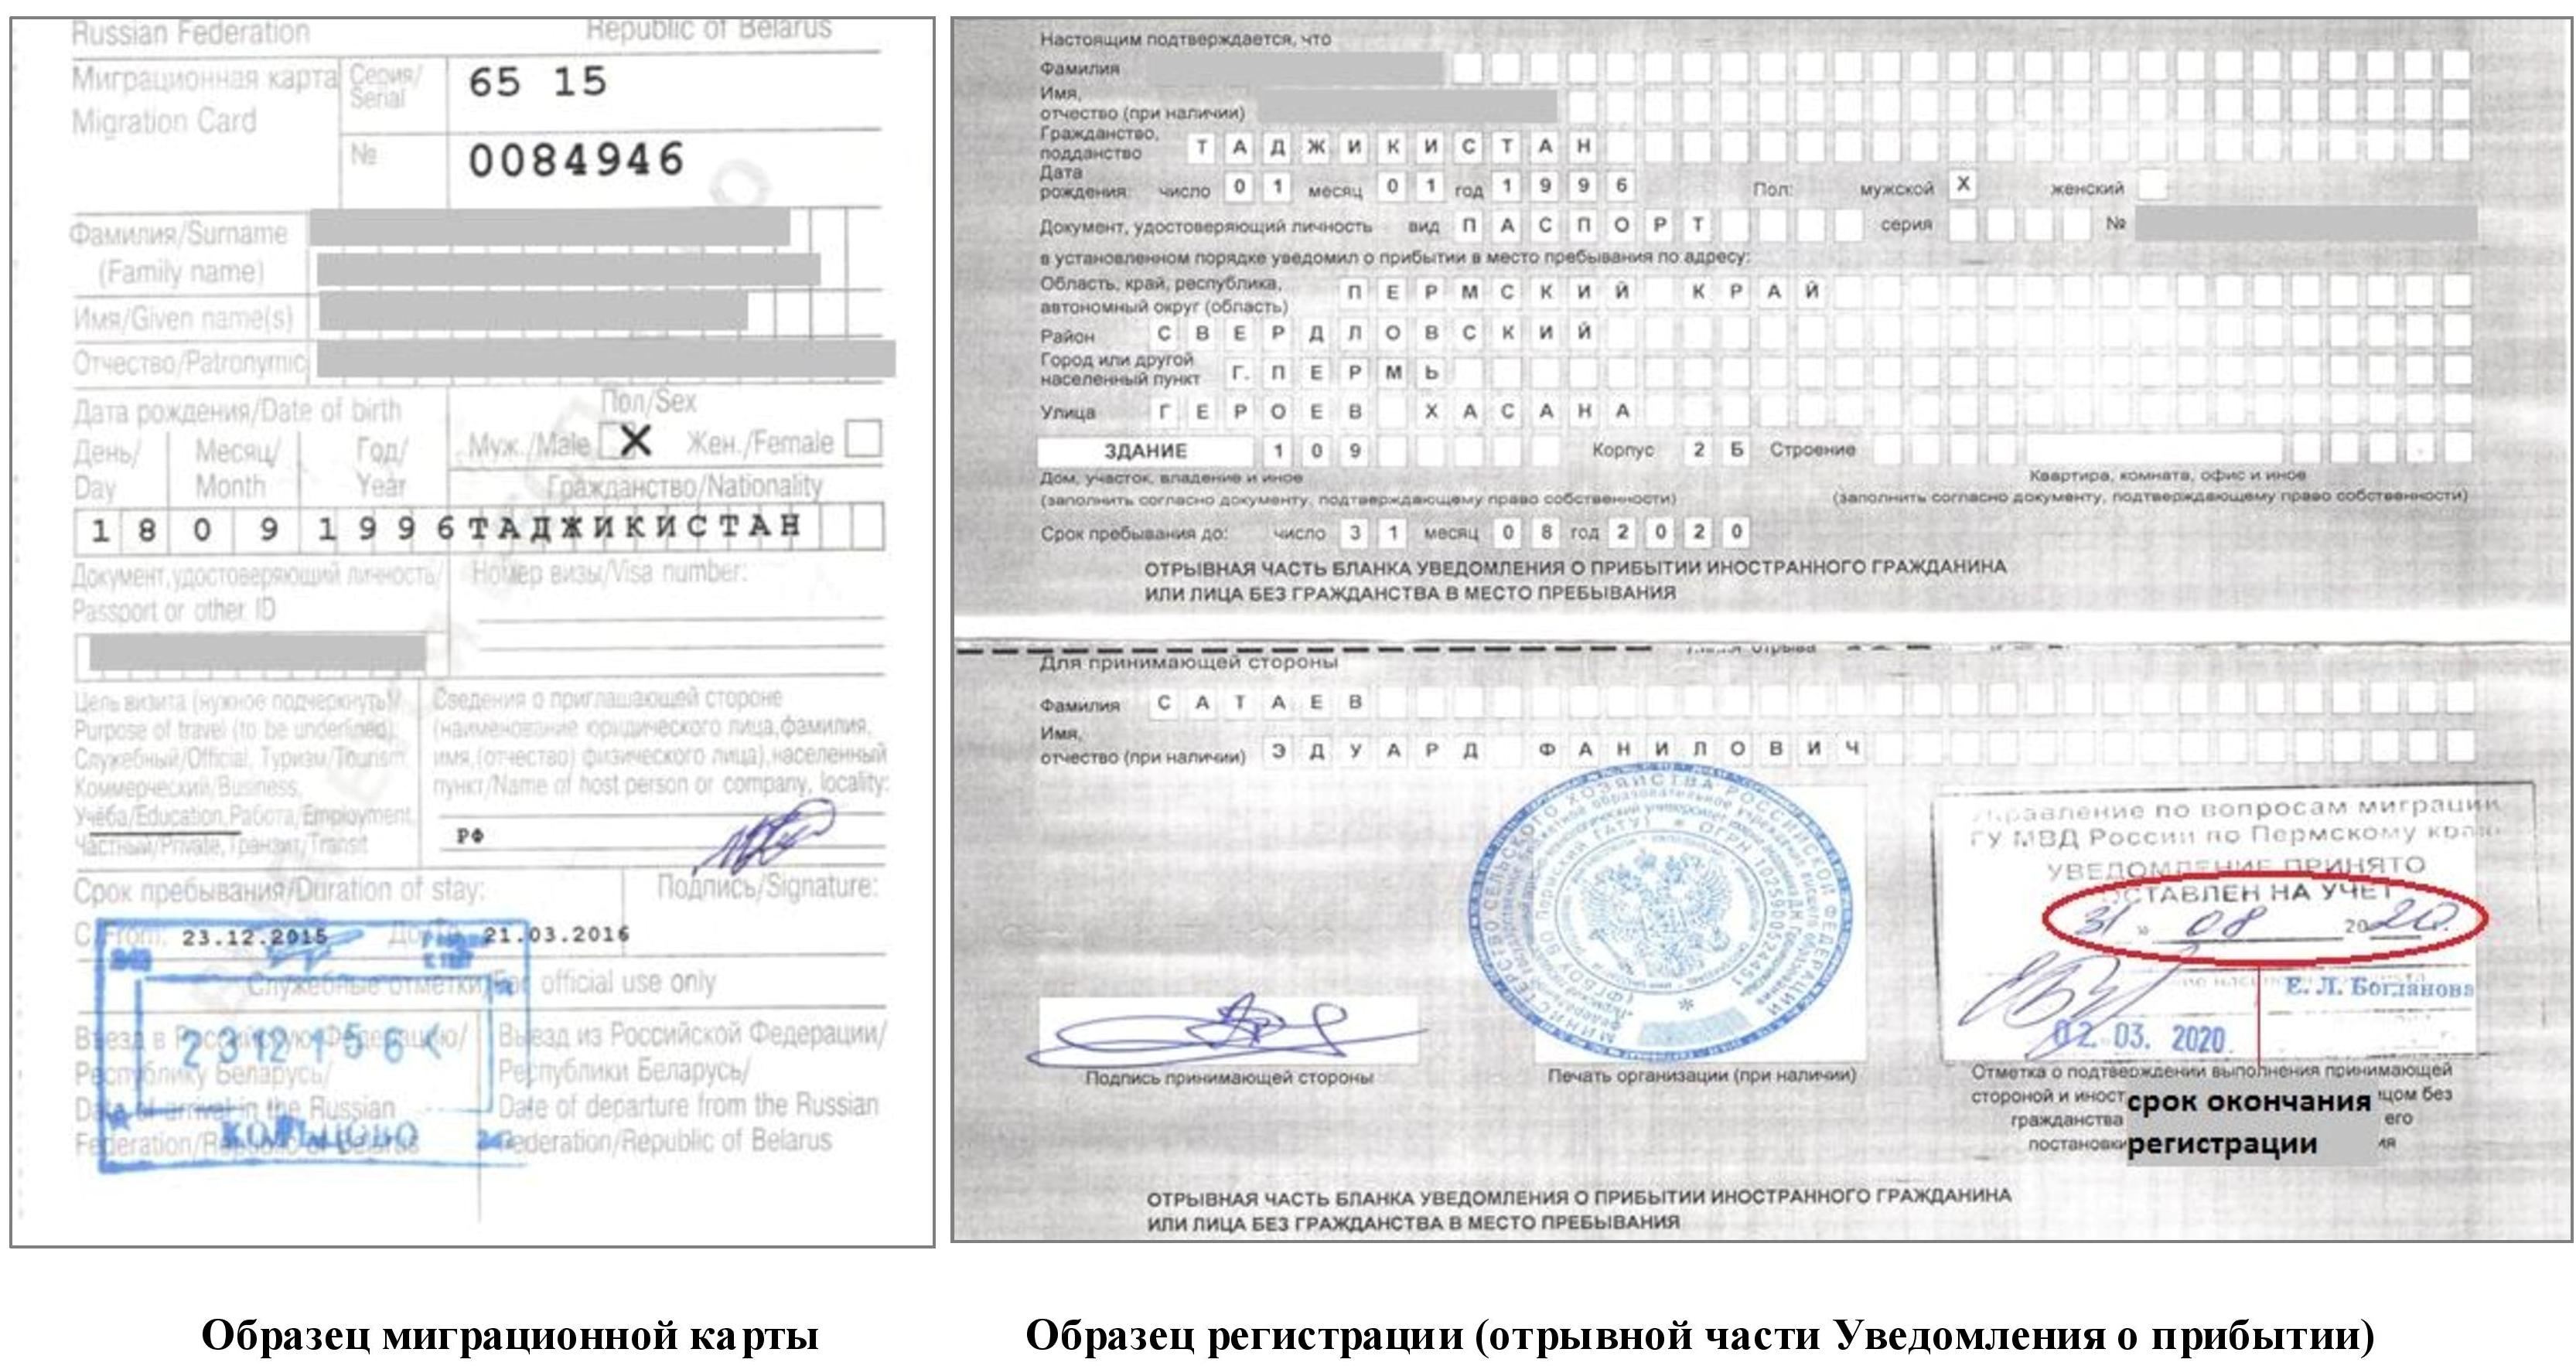 сроки регистрации иностранных граждан